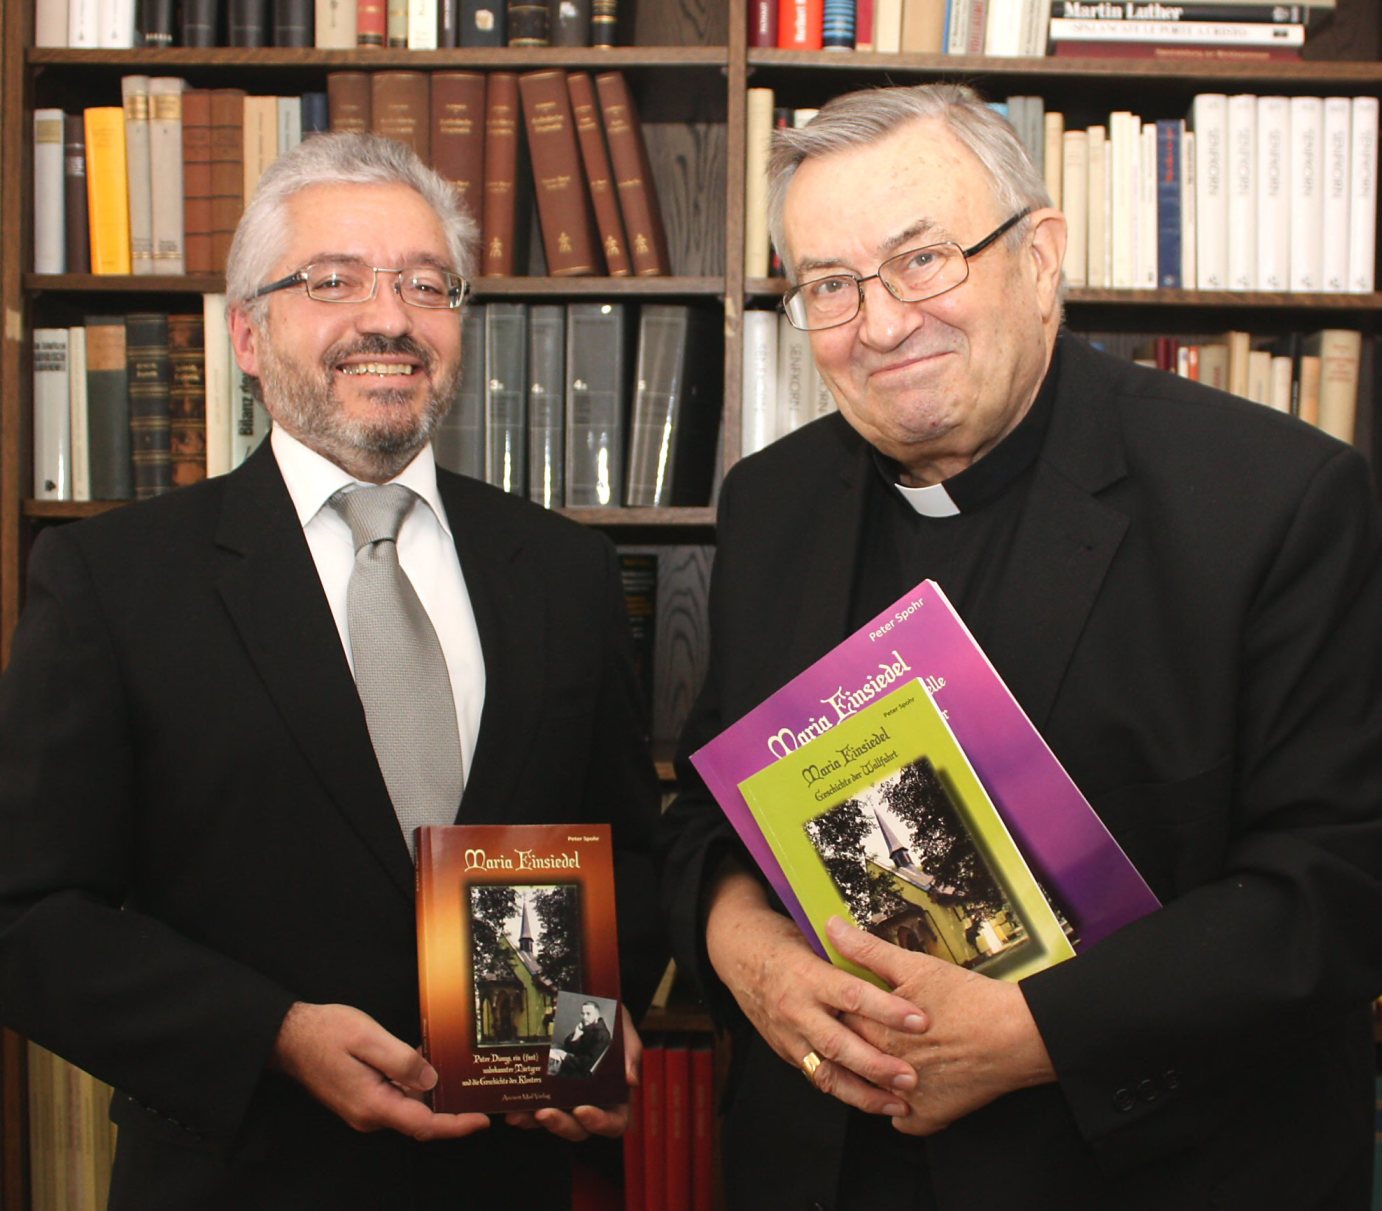 Mainz, 6.9.2013: Peter Spohr (l.) überreichte sein Buch über Kloster Einsiedel an Kardinal Karl Lehmann. (c) Bistum Mainz / Blum